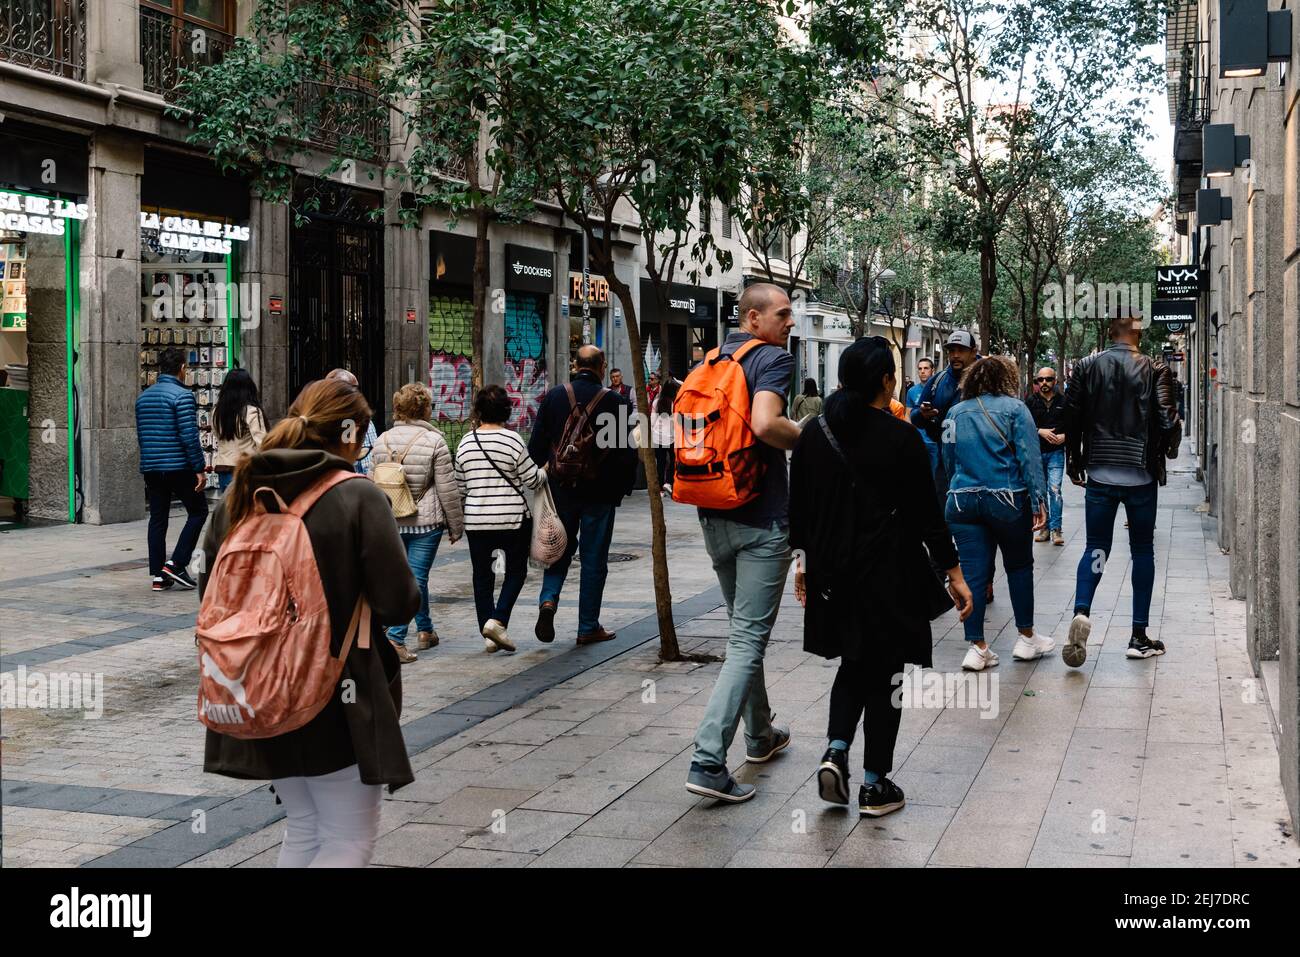 Madrid, Espagne - 1 novembre 2019 : les gens magasinent dans la rue commerciale Fuencarral dans le centre de Madrid. Scène de rue Banque D'Images